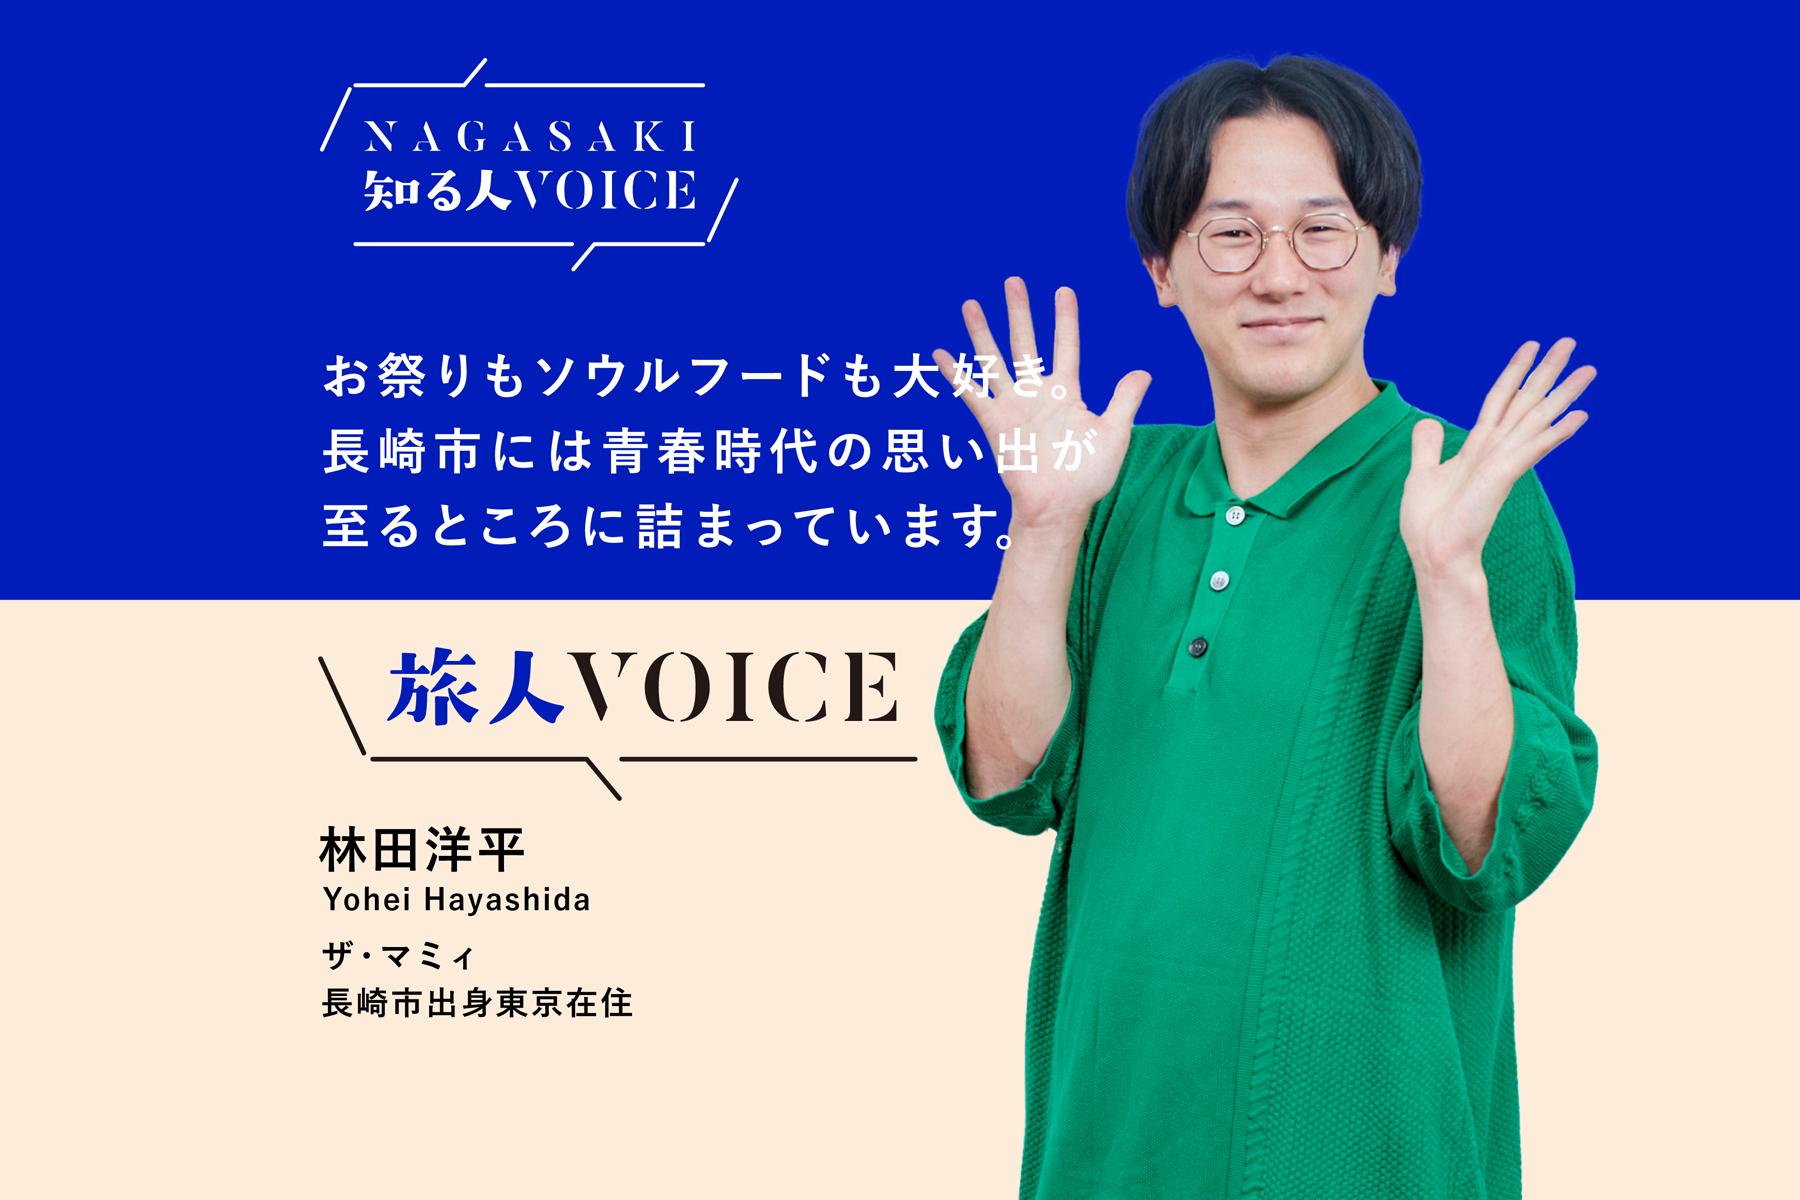 【記事掲載】「NAGASAKI知る人VOICE」ザ・マミィ　林田洋平さんのインタビュー記事を掲載しました-1